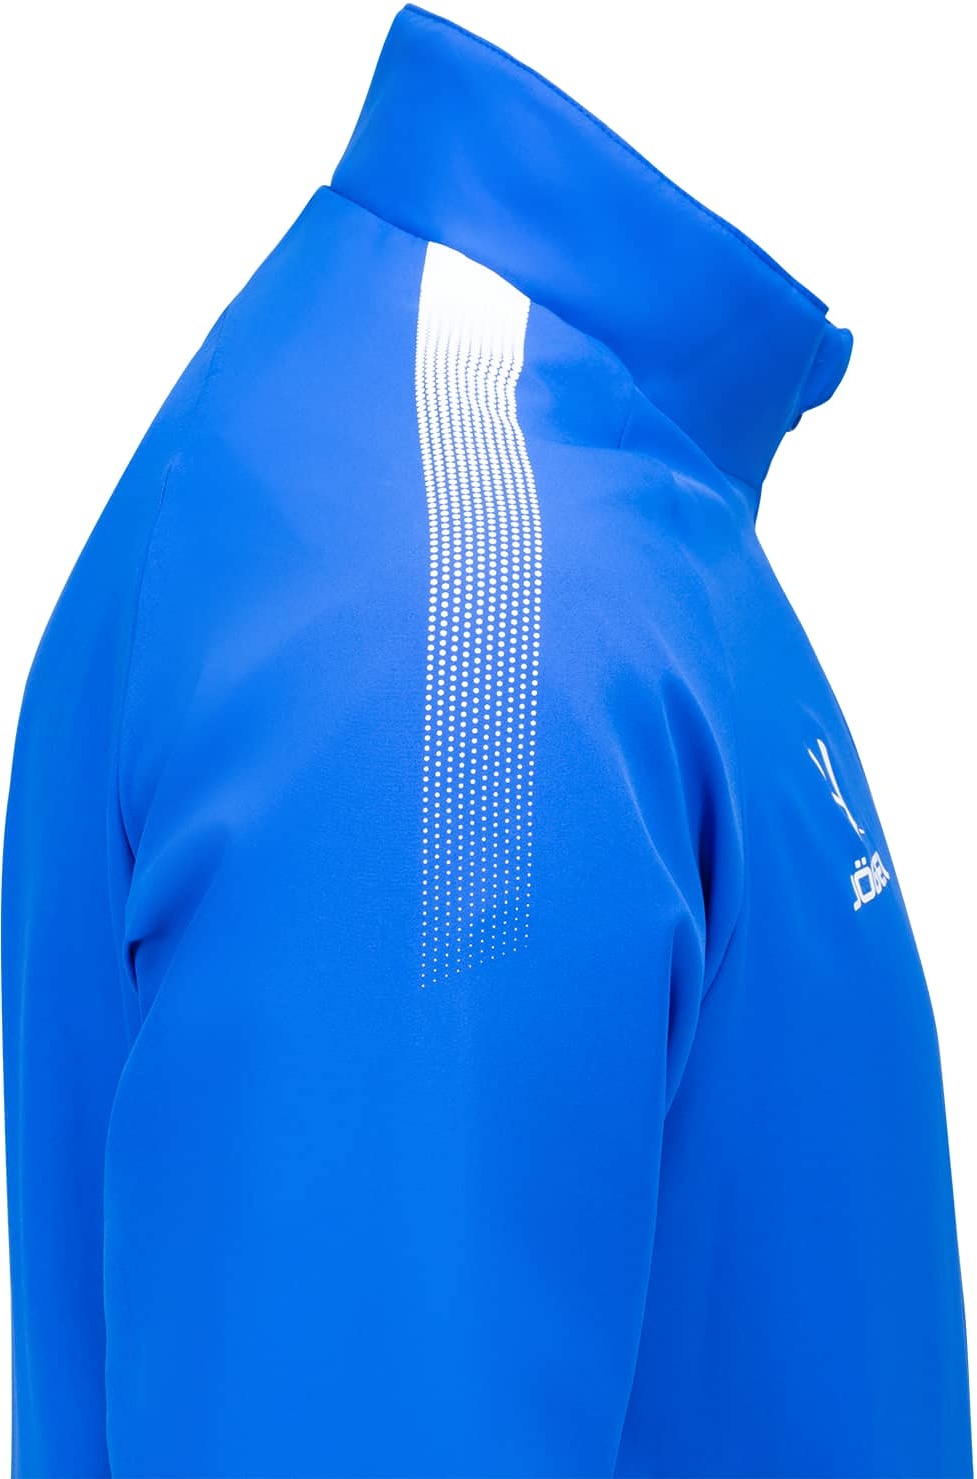 Костюм мужской Jogel CAMP Lined Suit голубой, синий S